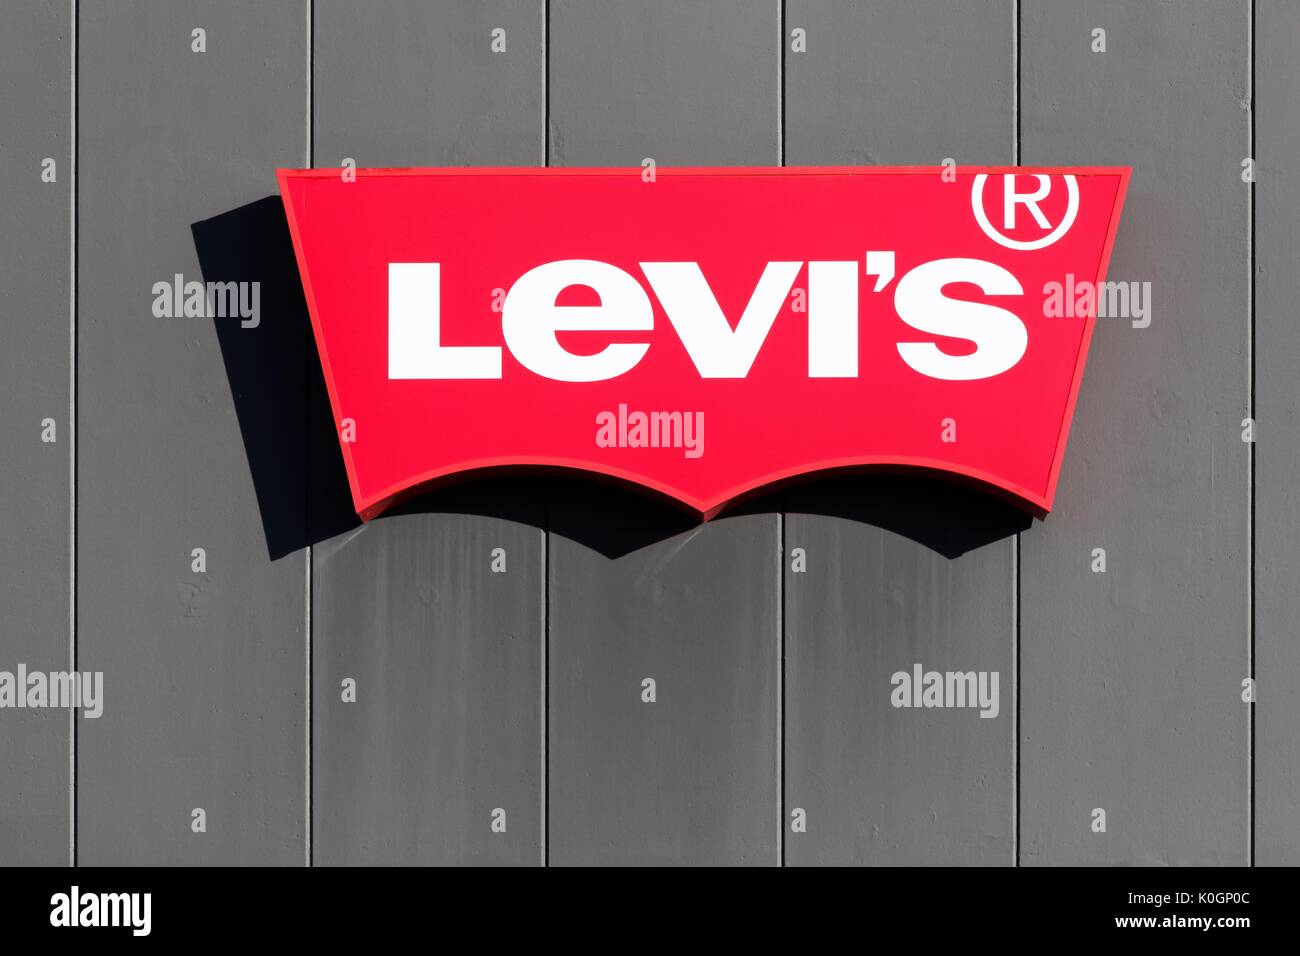 Merignac, Frankreich - Juni 5, 2017: Levi Strauss ist ein privat geführtes American Clothing Company ist weltweit bekannt für seine Marke Levi Jeans Stockfoto